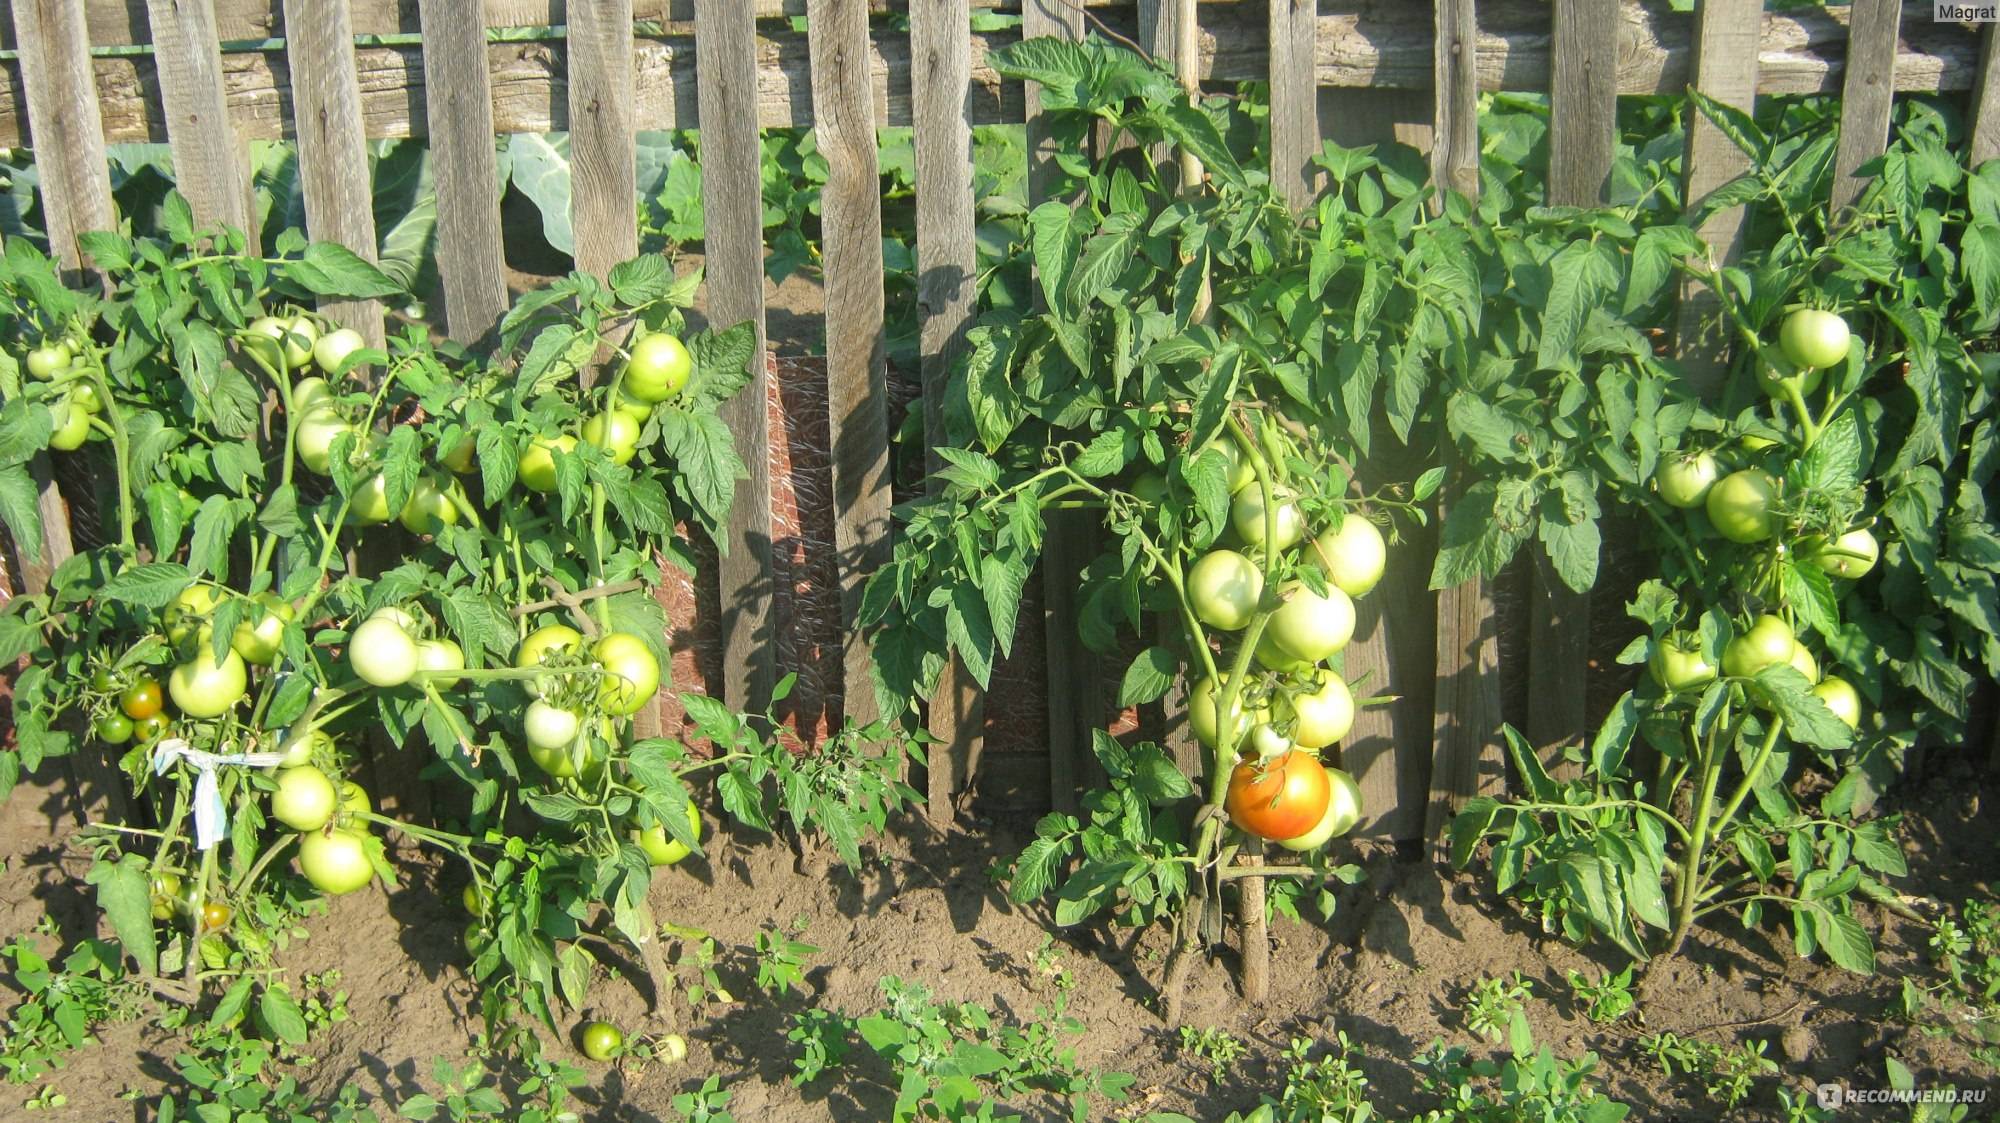 Описание томат сорта топтыжка, его характеристики и выращивание